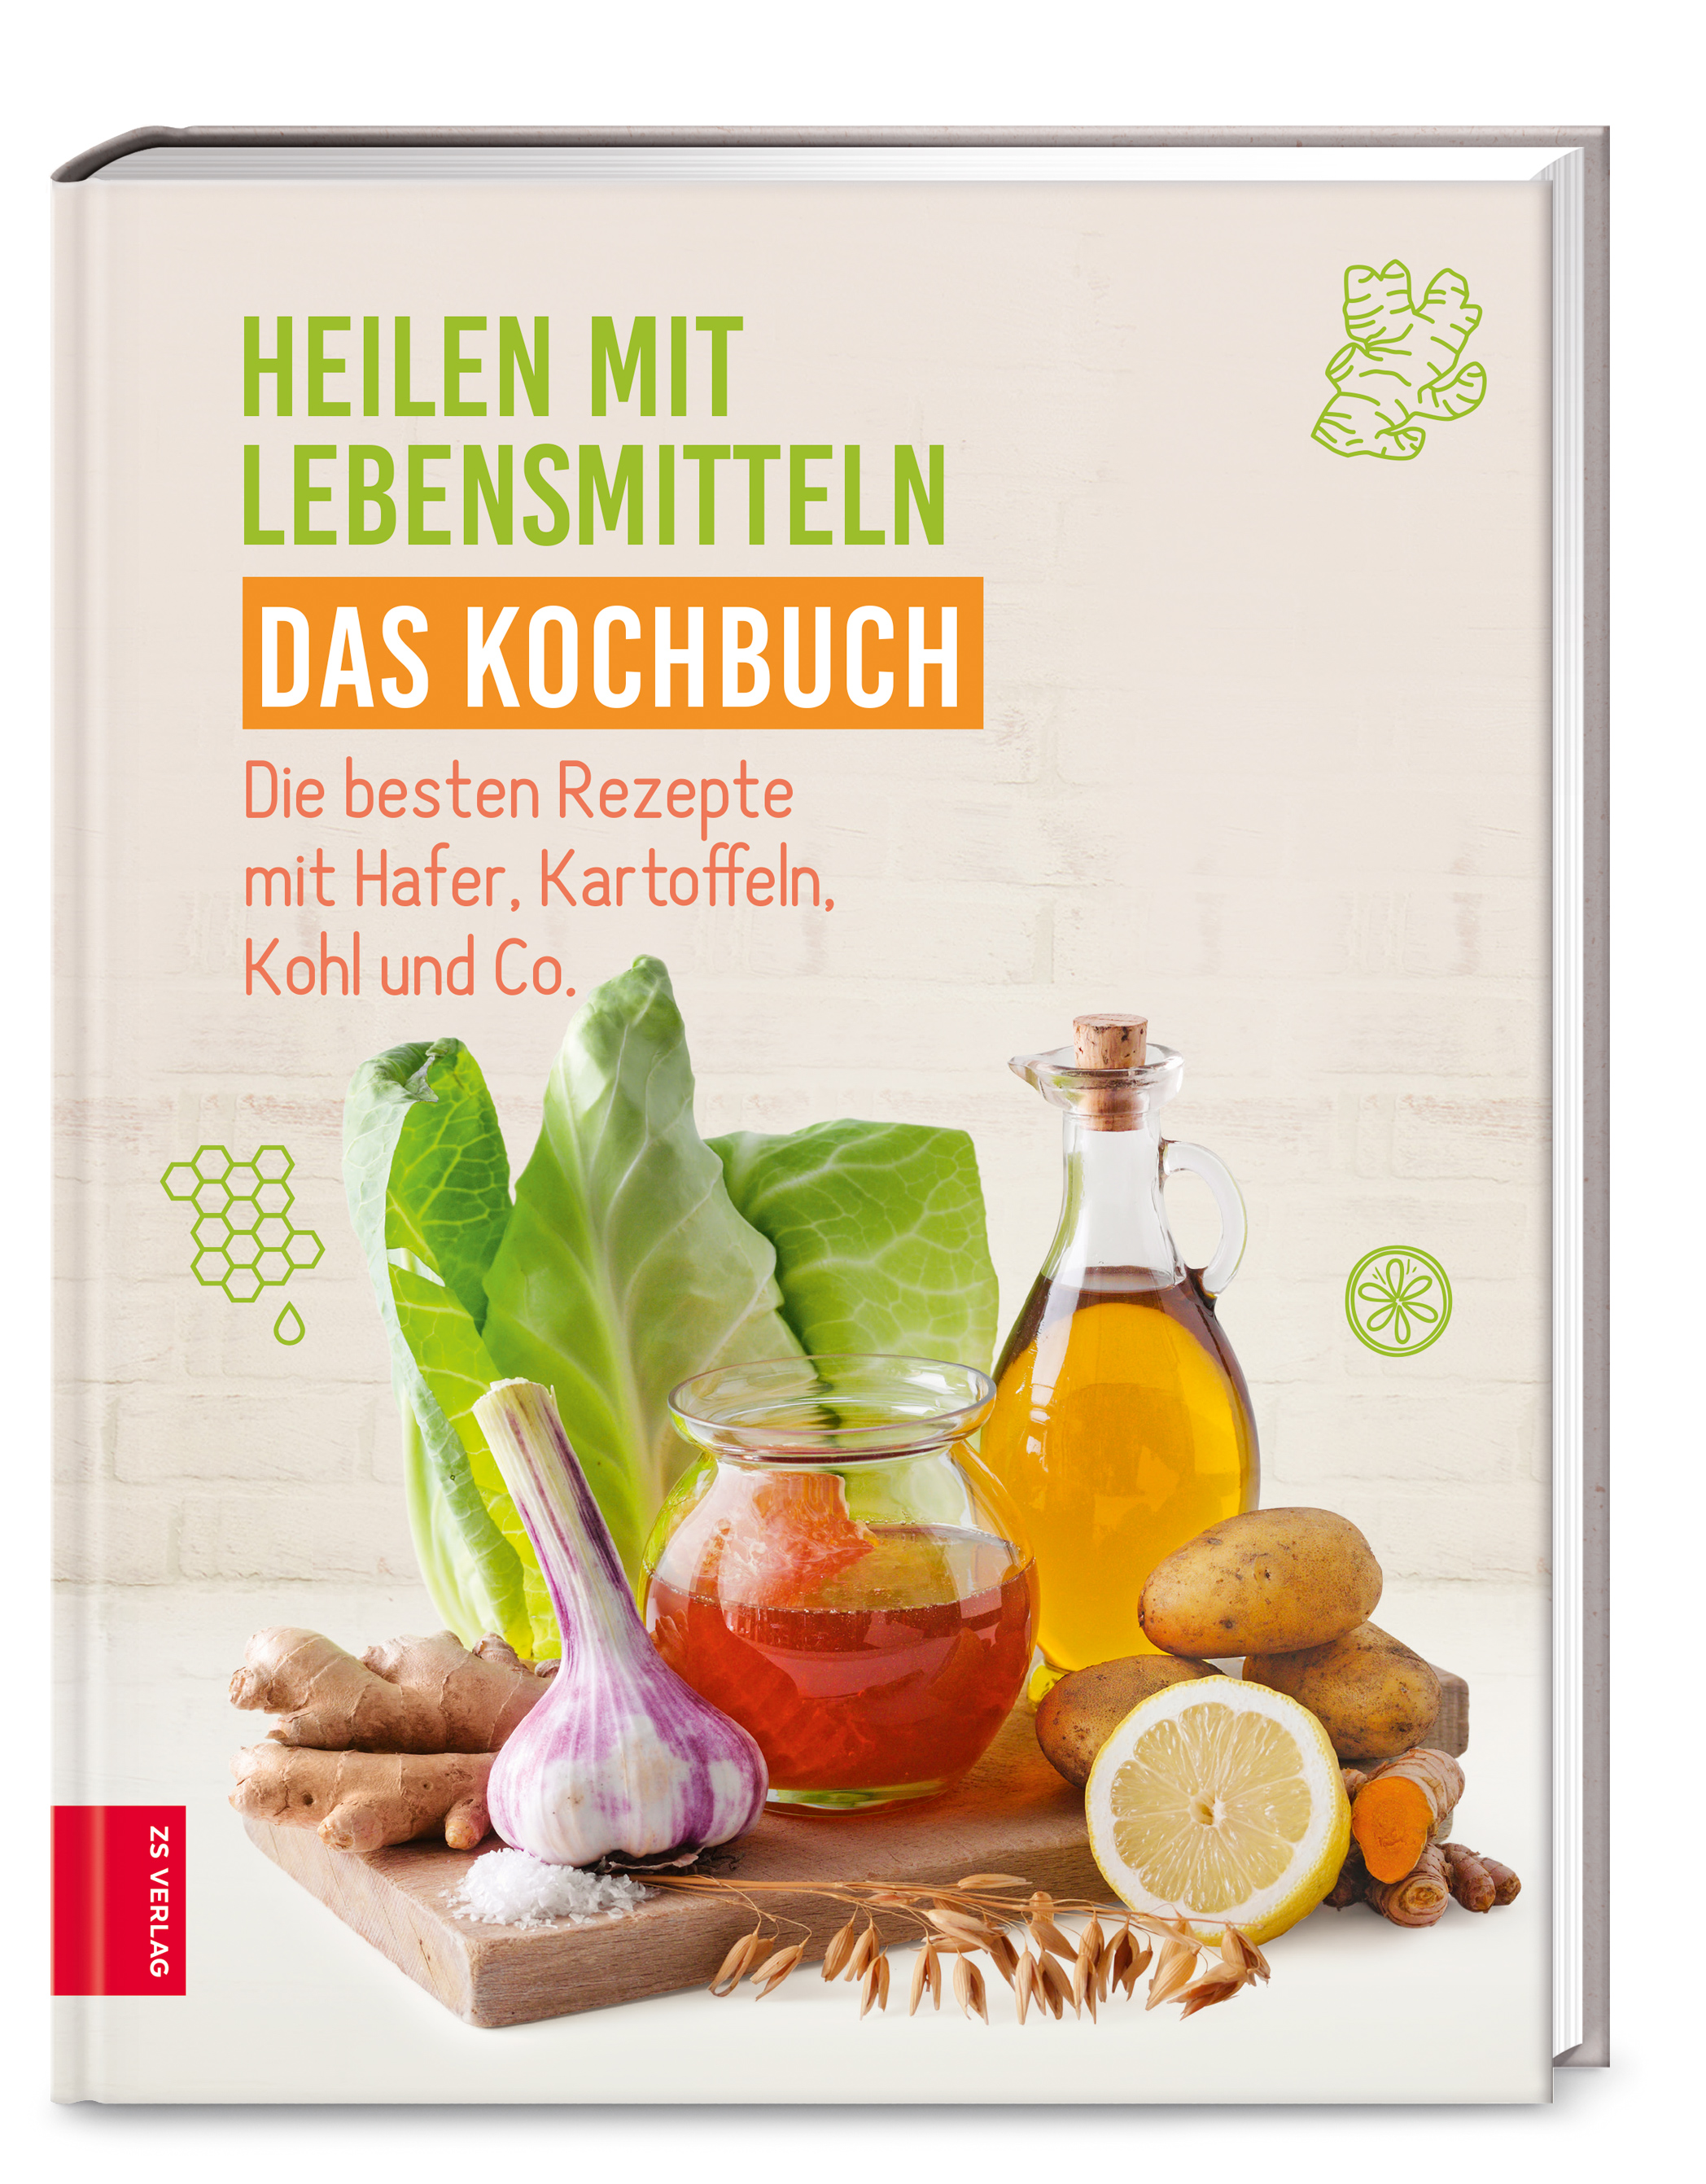 Heilen mit Lebensmitteln: Das Kochbuch - Die besten Rezepte mit Hafer, Kartoffeln, Kohl und Co.